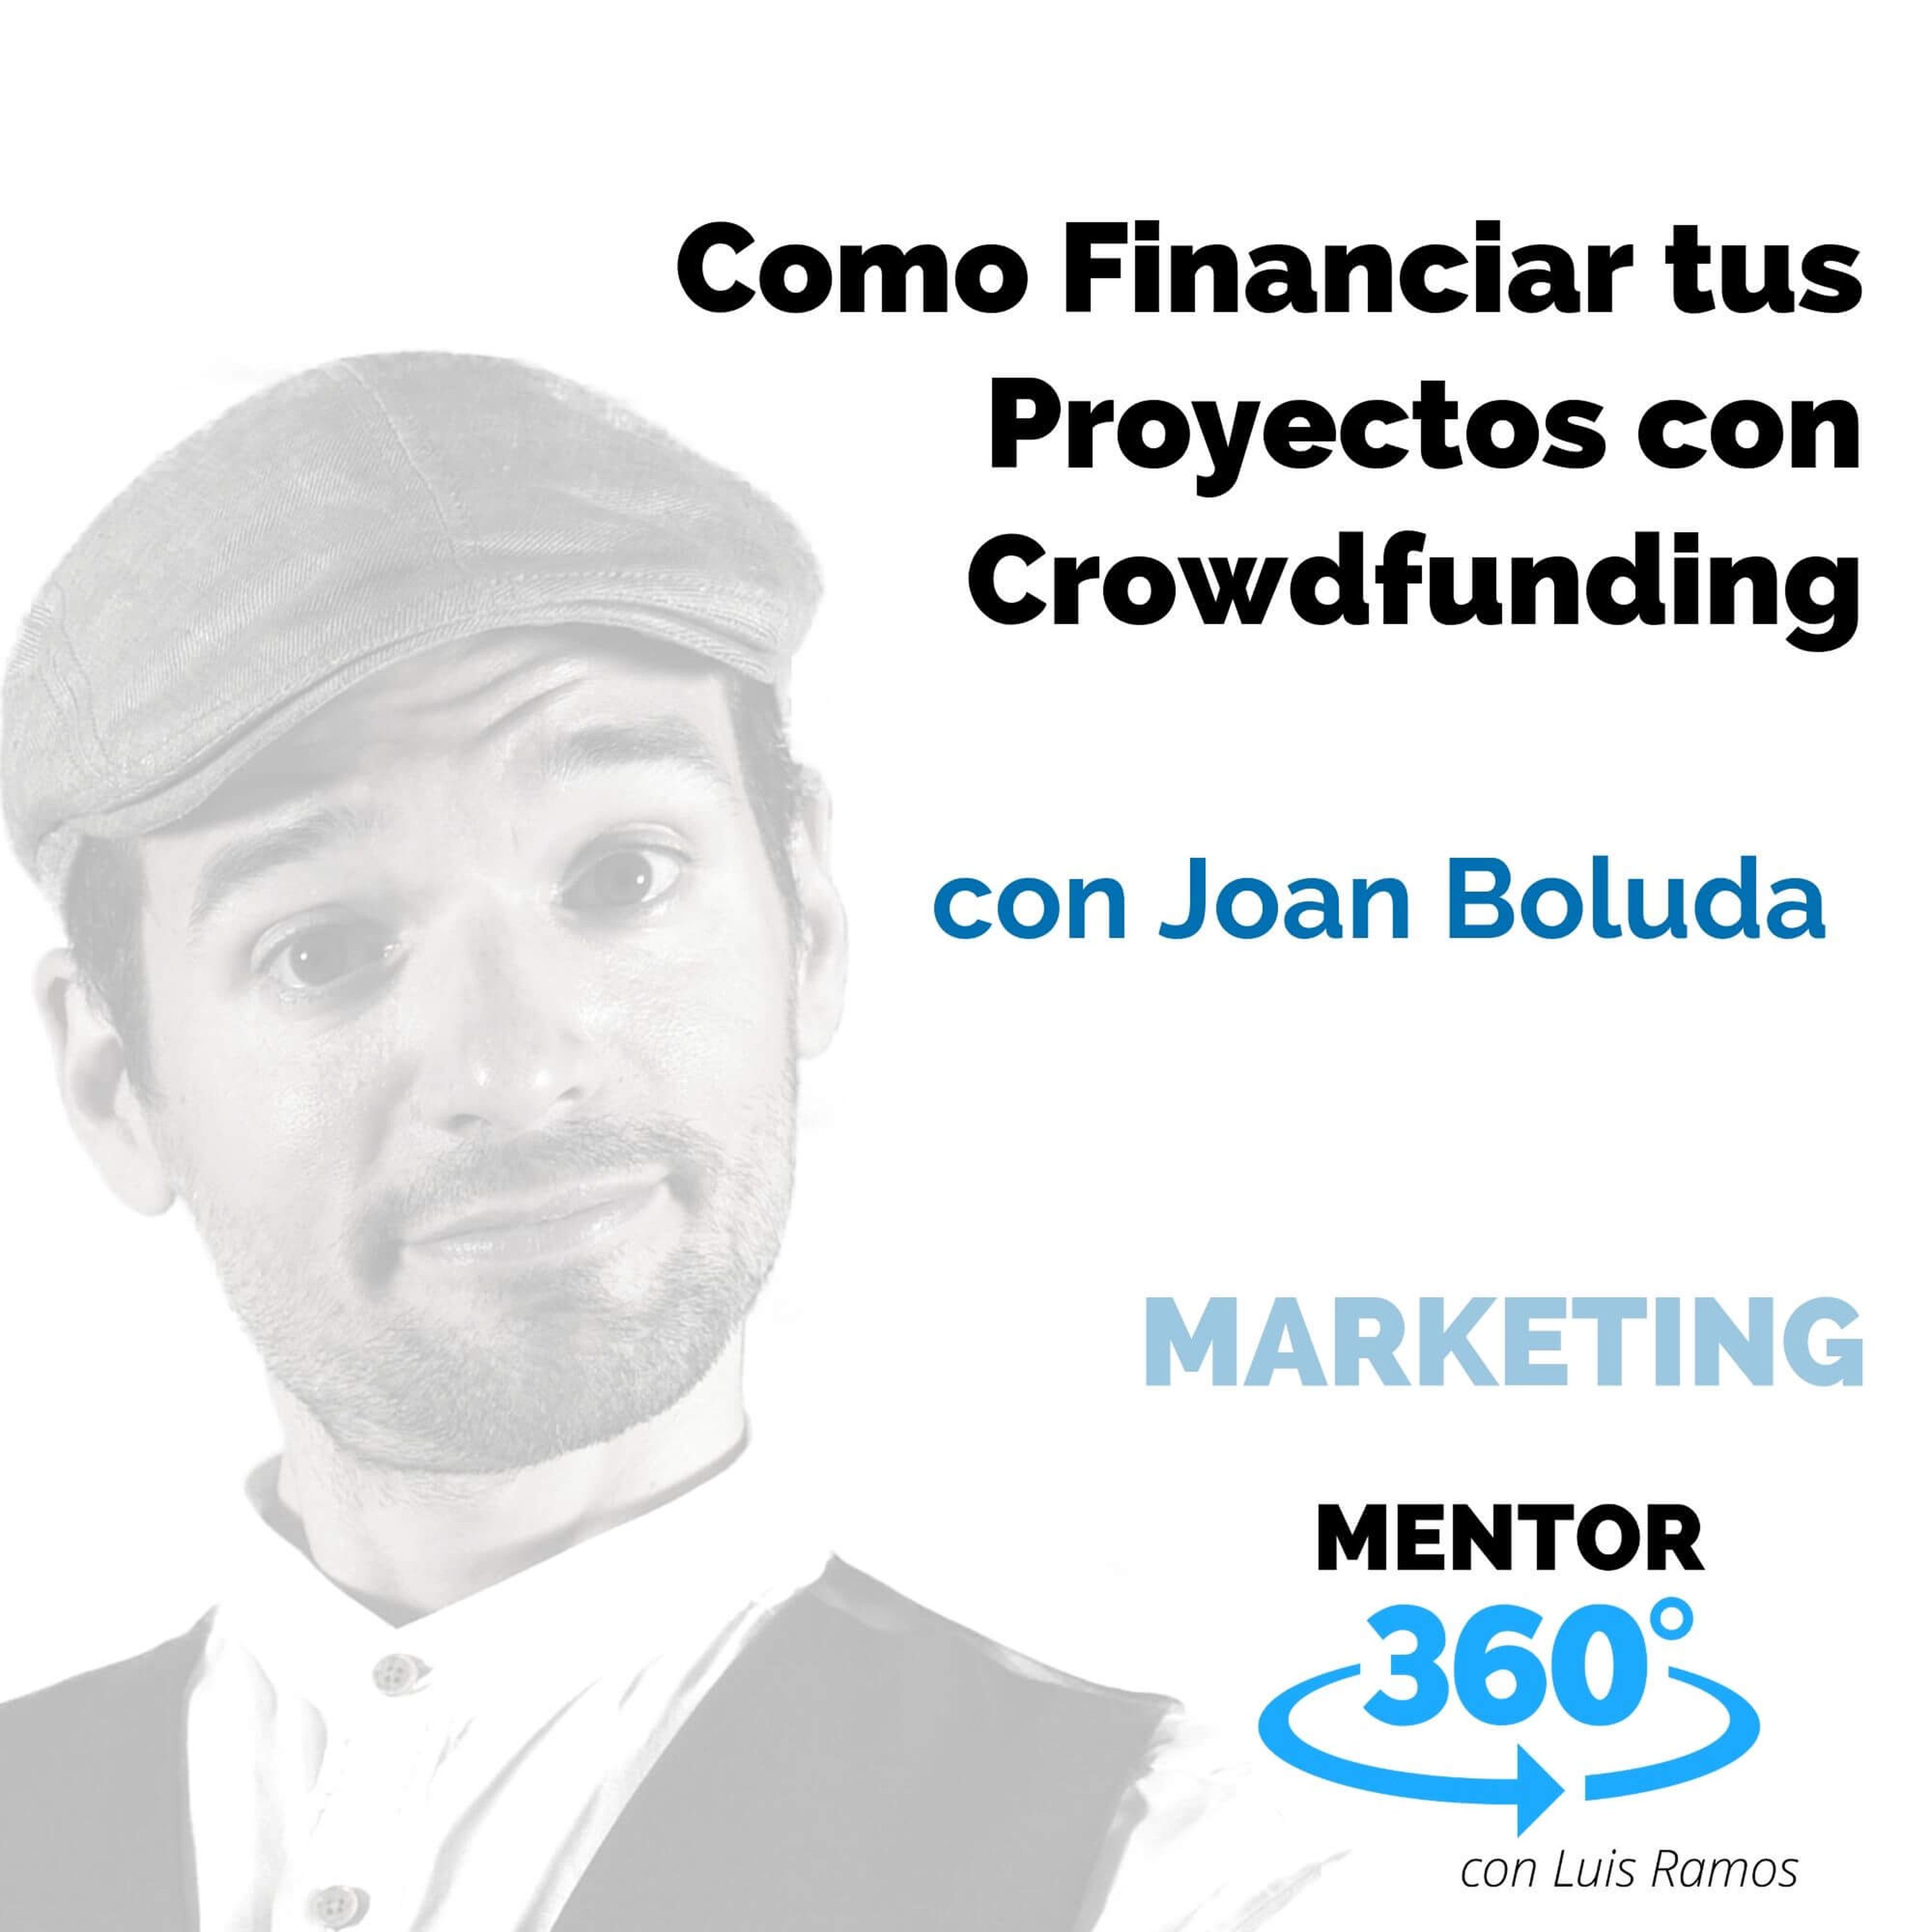 Cómo Financiar tus Proyectos con Crowdfunding, con Joan Boluda - MARKETING - MENTOR360